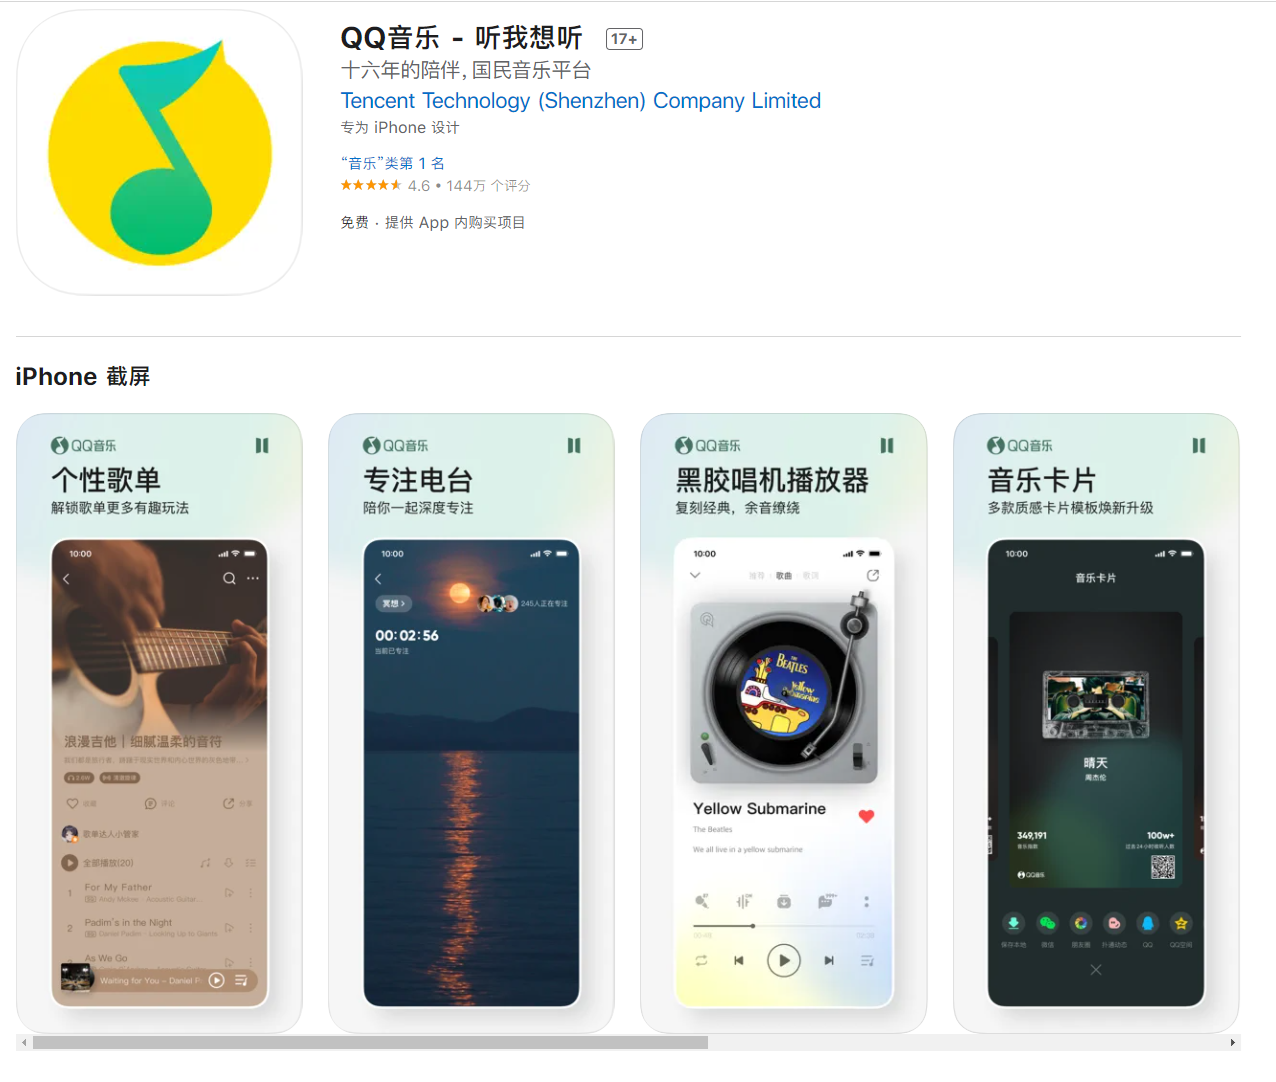 QQ音乐iOS版11.7.0上线 新增桌面歌词等功能